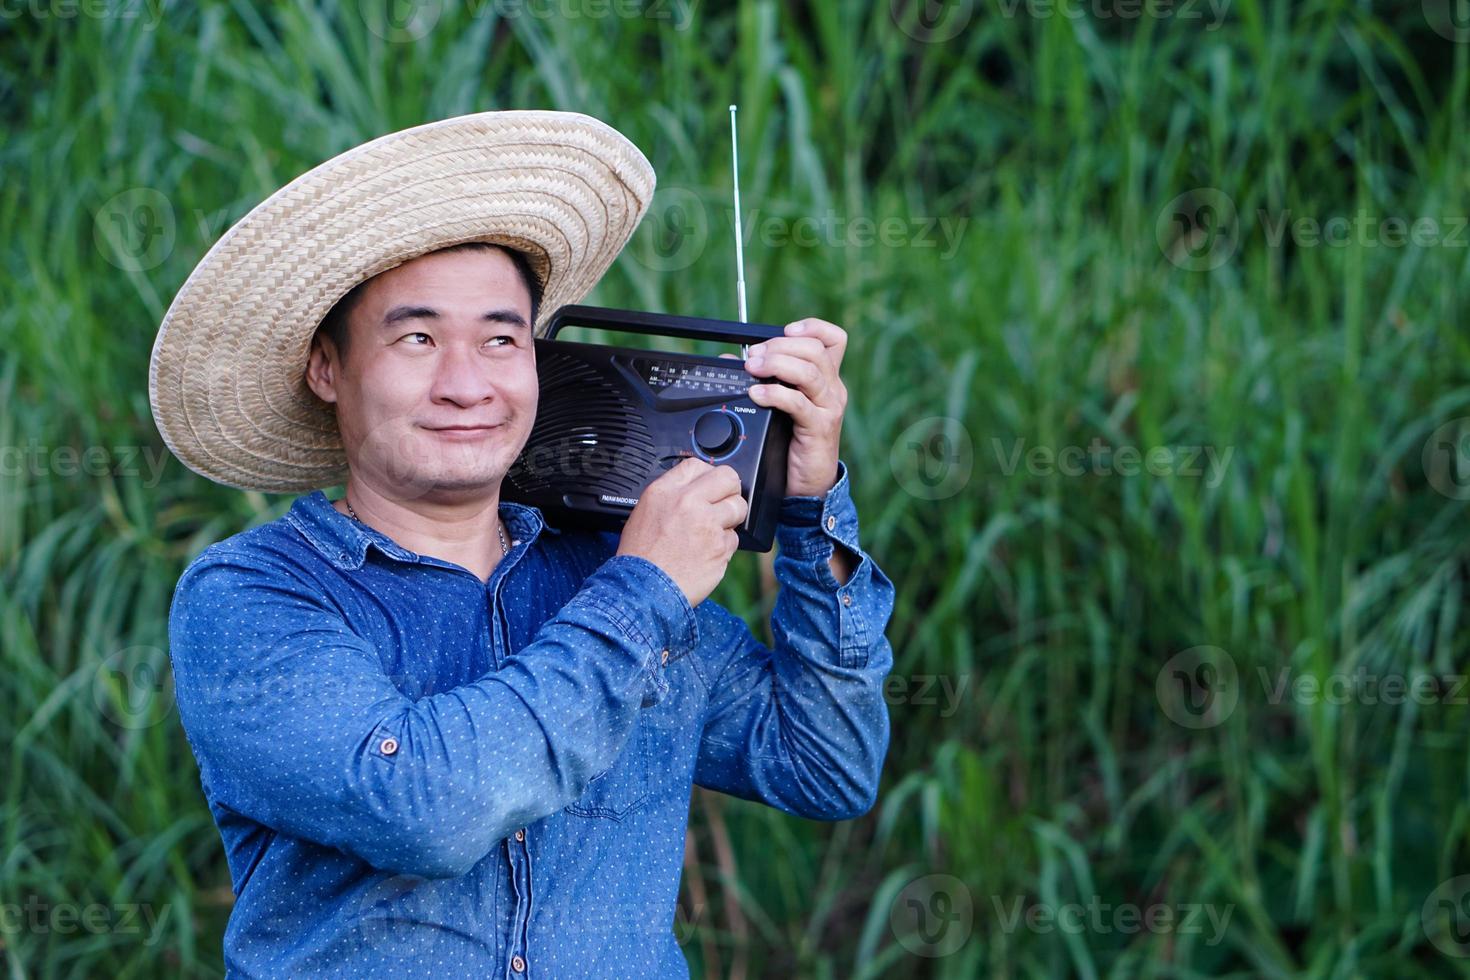 un fermier asiatique porte un chapeau, une chemise bleue, tient une radio transistor sur son épaule au jardin, se sent heureux. concept, heureux de travailler avec de la musique, des nouvelles, des informations de la radio. mode de vie campagnard. photo